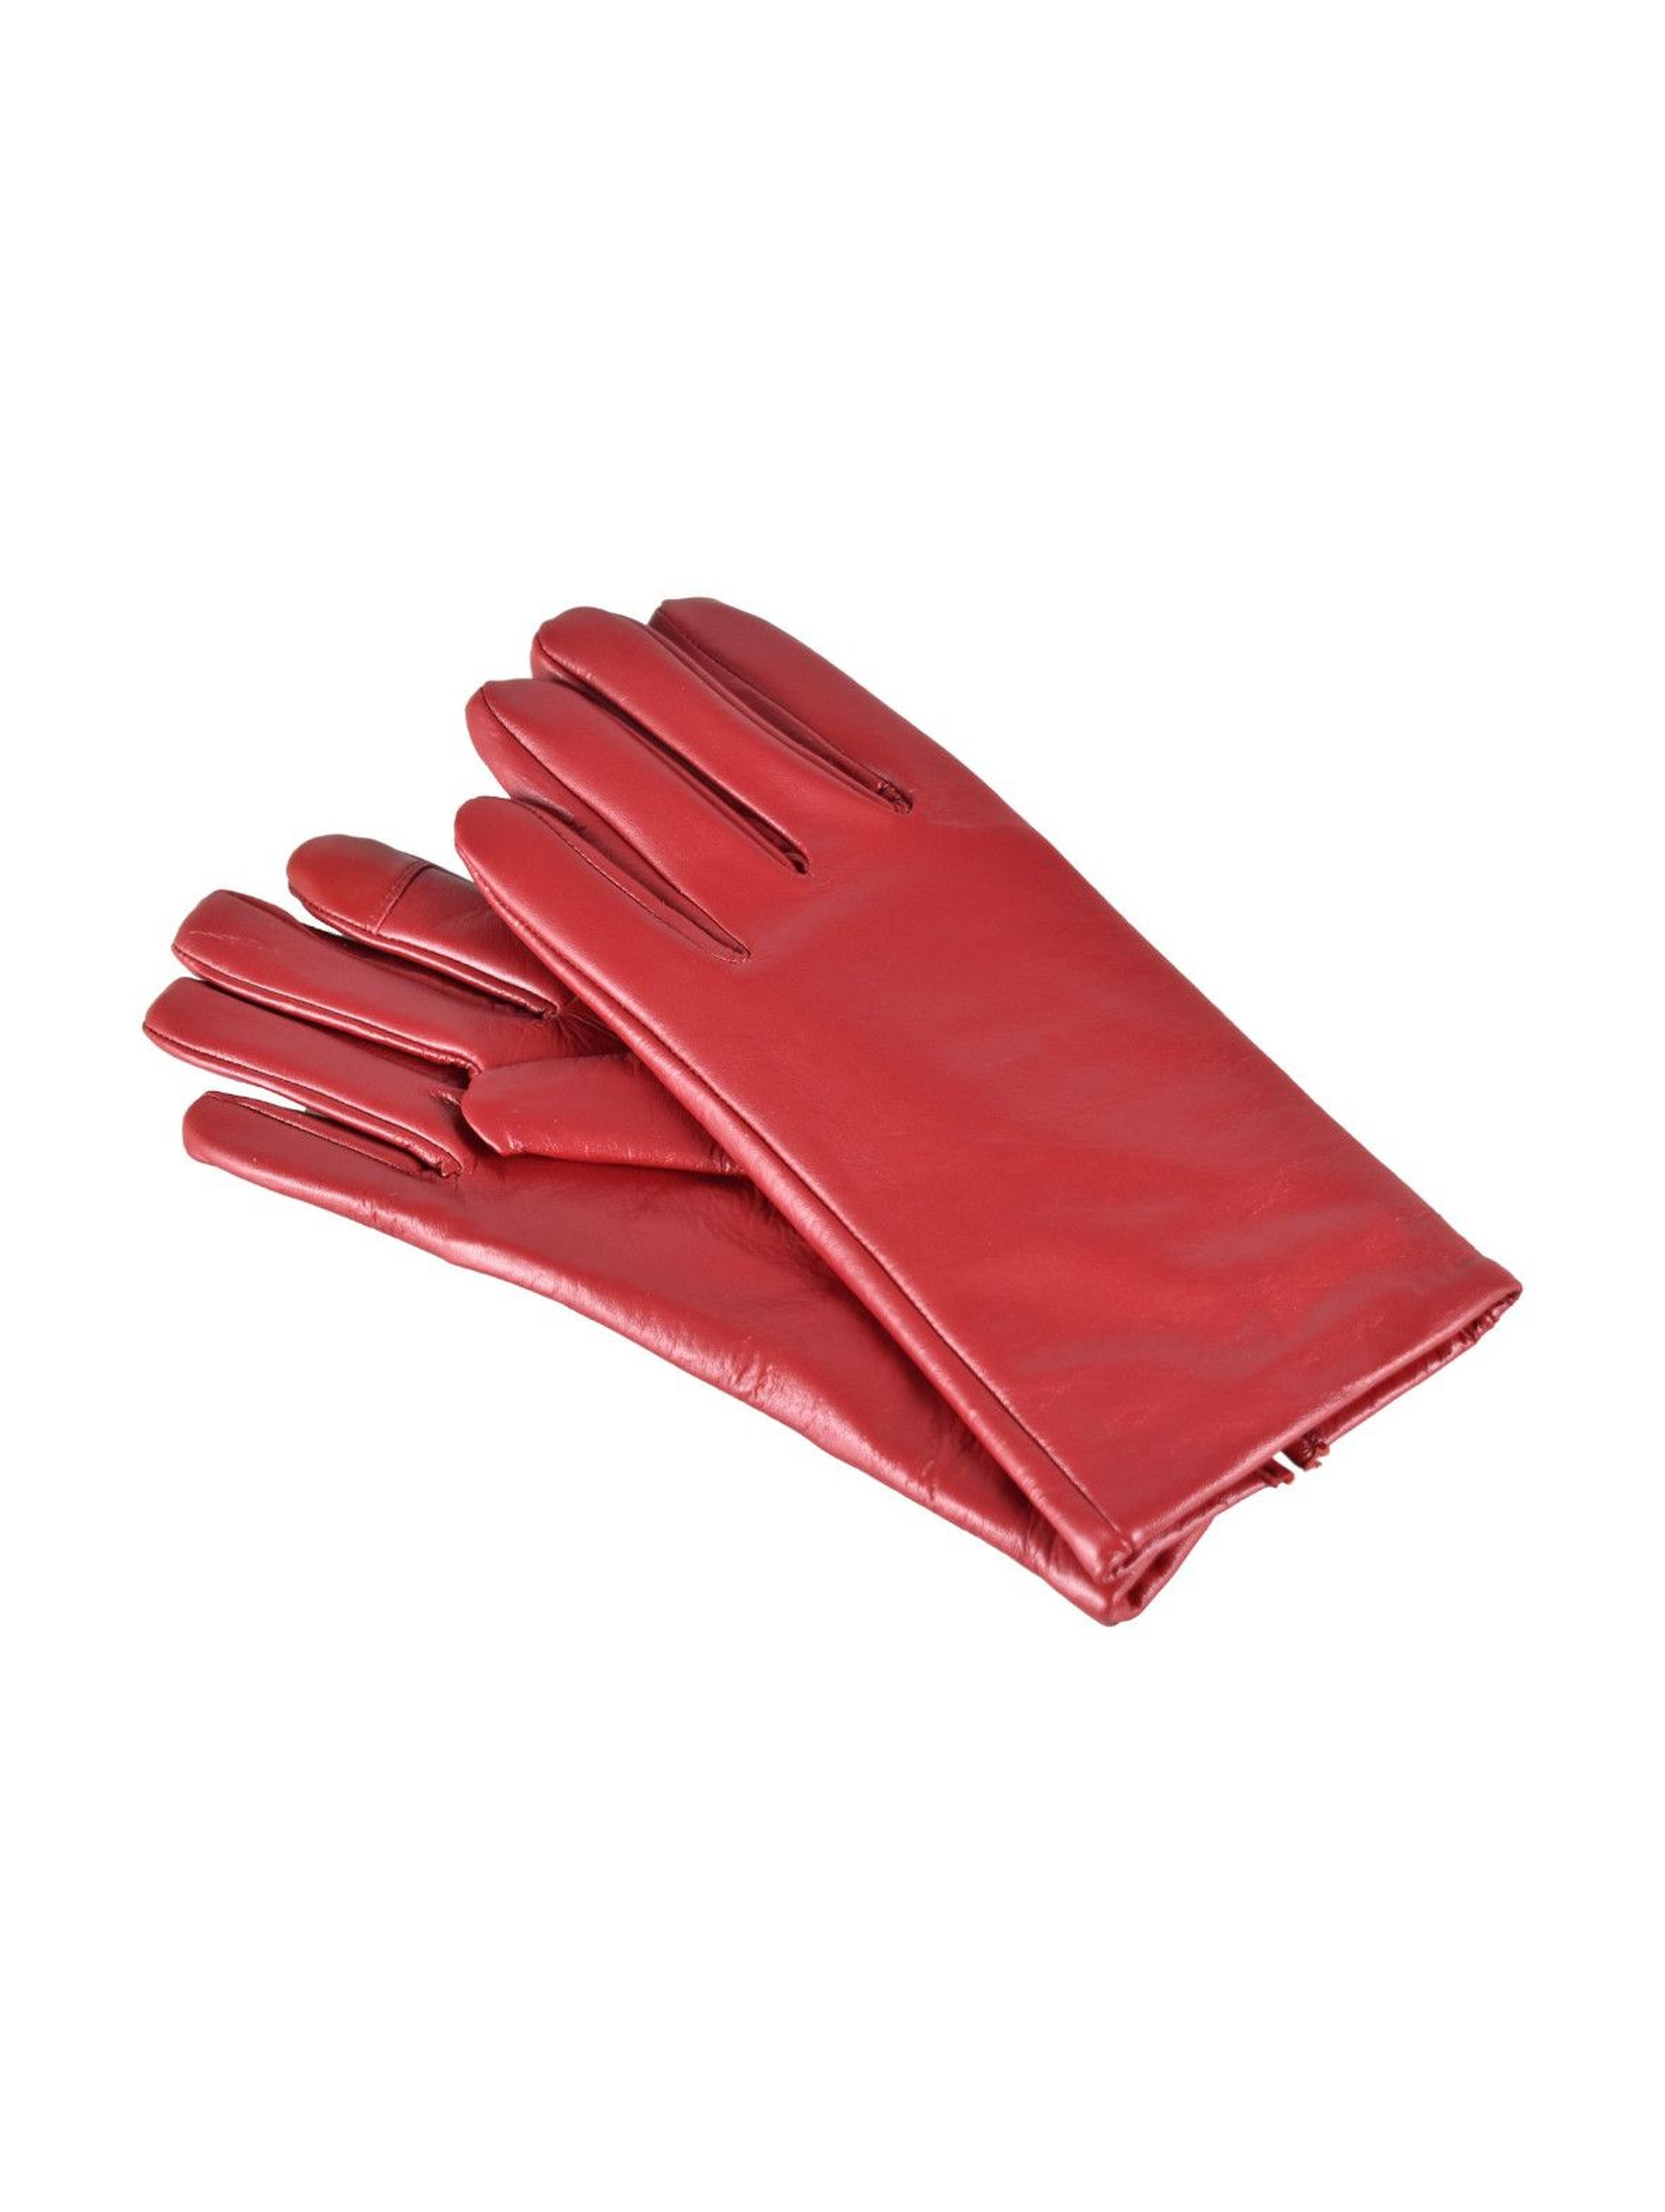 Rękawiczki damskie skórzane antybakteryjne - czerwone